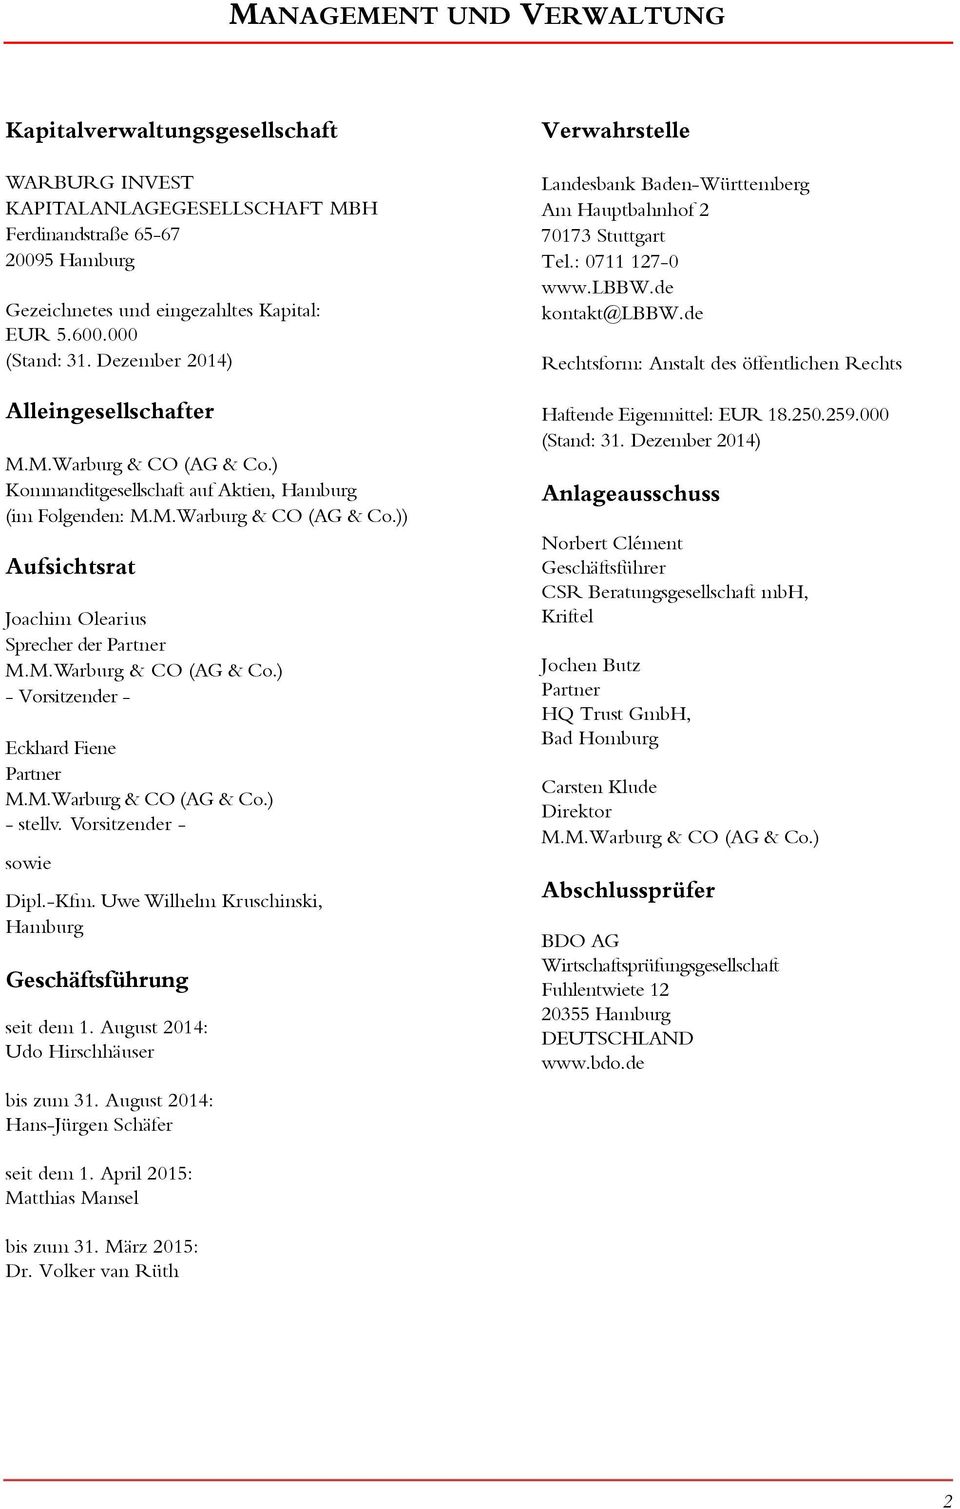 M.Warburg & CO (AG & Co.) - Vorsitzender - Eckhard Fiene Partner M.M.Warburg & CO (AG & Co.) - stellv. Vorsitzender - sowie Dipl.-Kfm. Uwe Wilhelm Kruschinski, Hamburg Geschäftsführung seit dem 1.